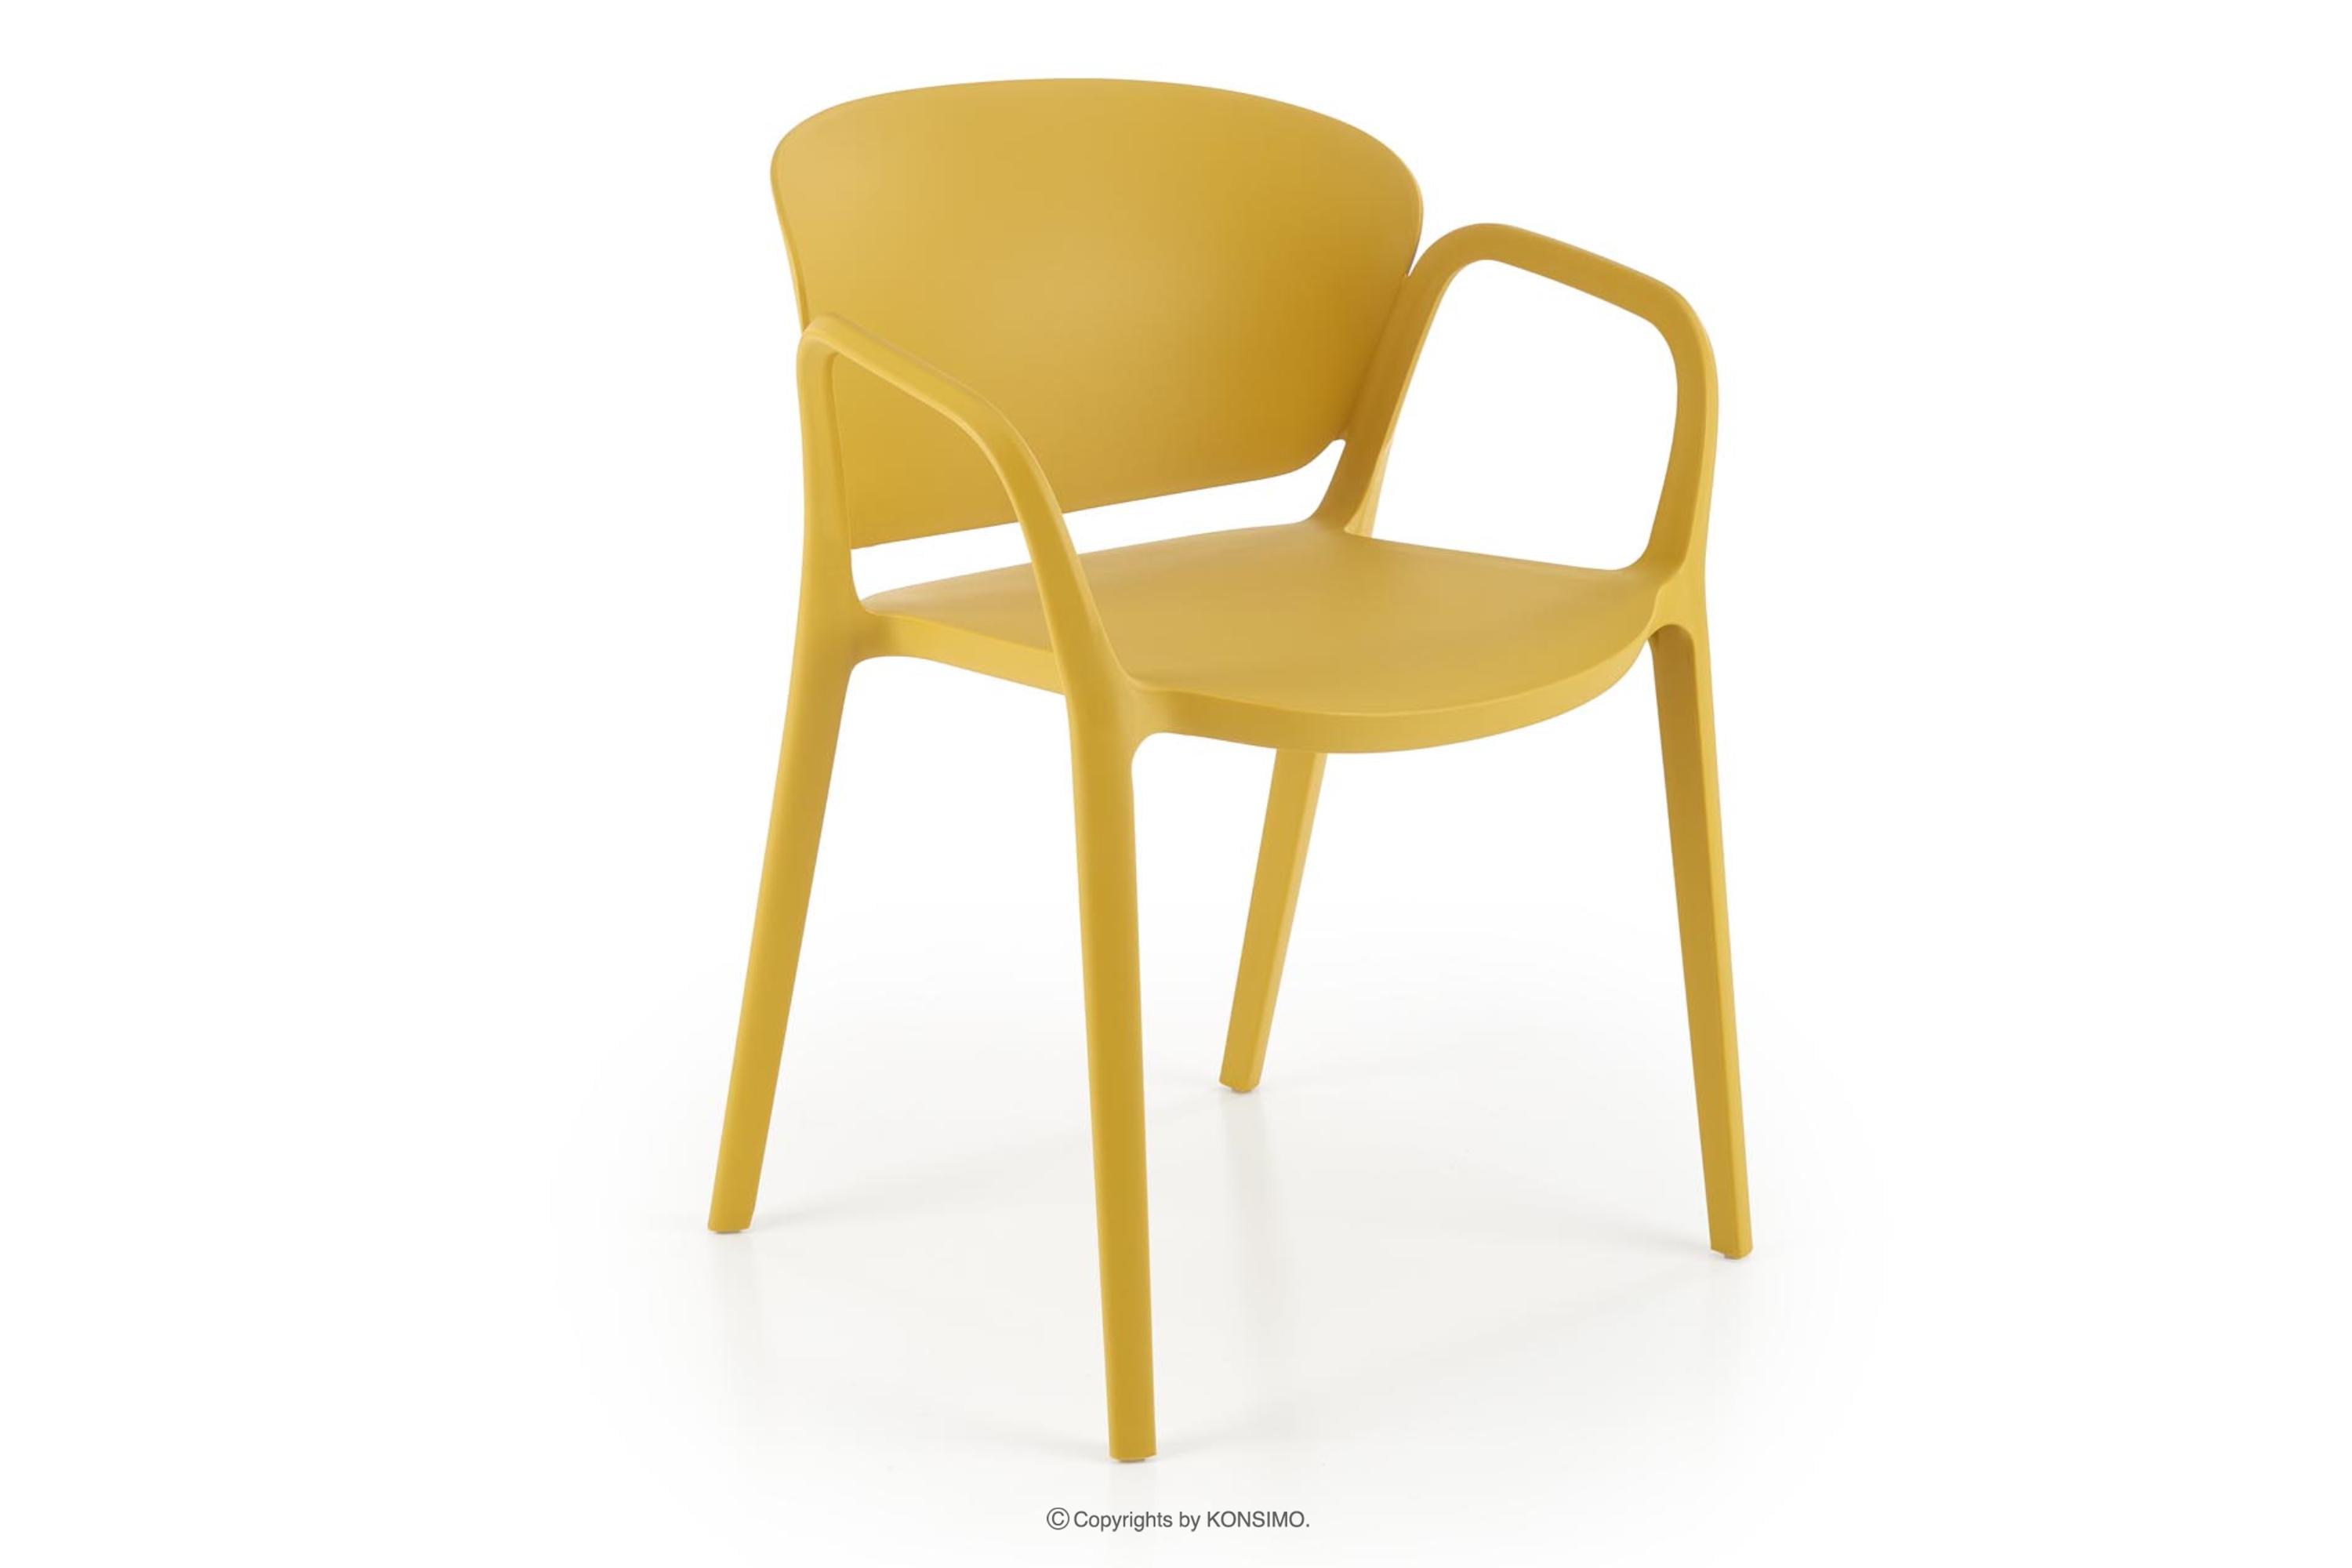 Gelber Stuhl im modernen Stil